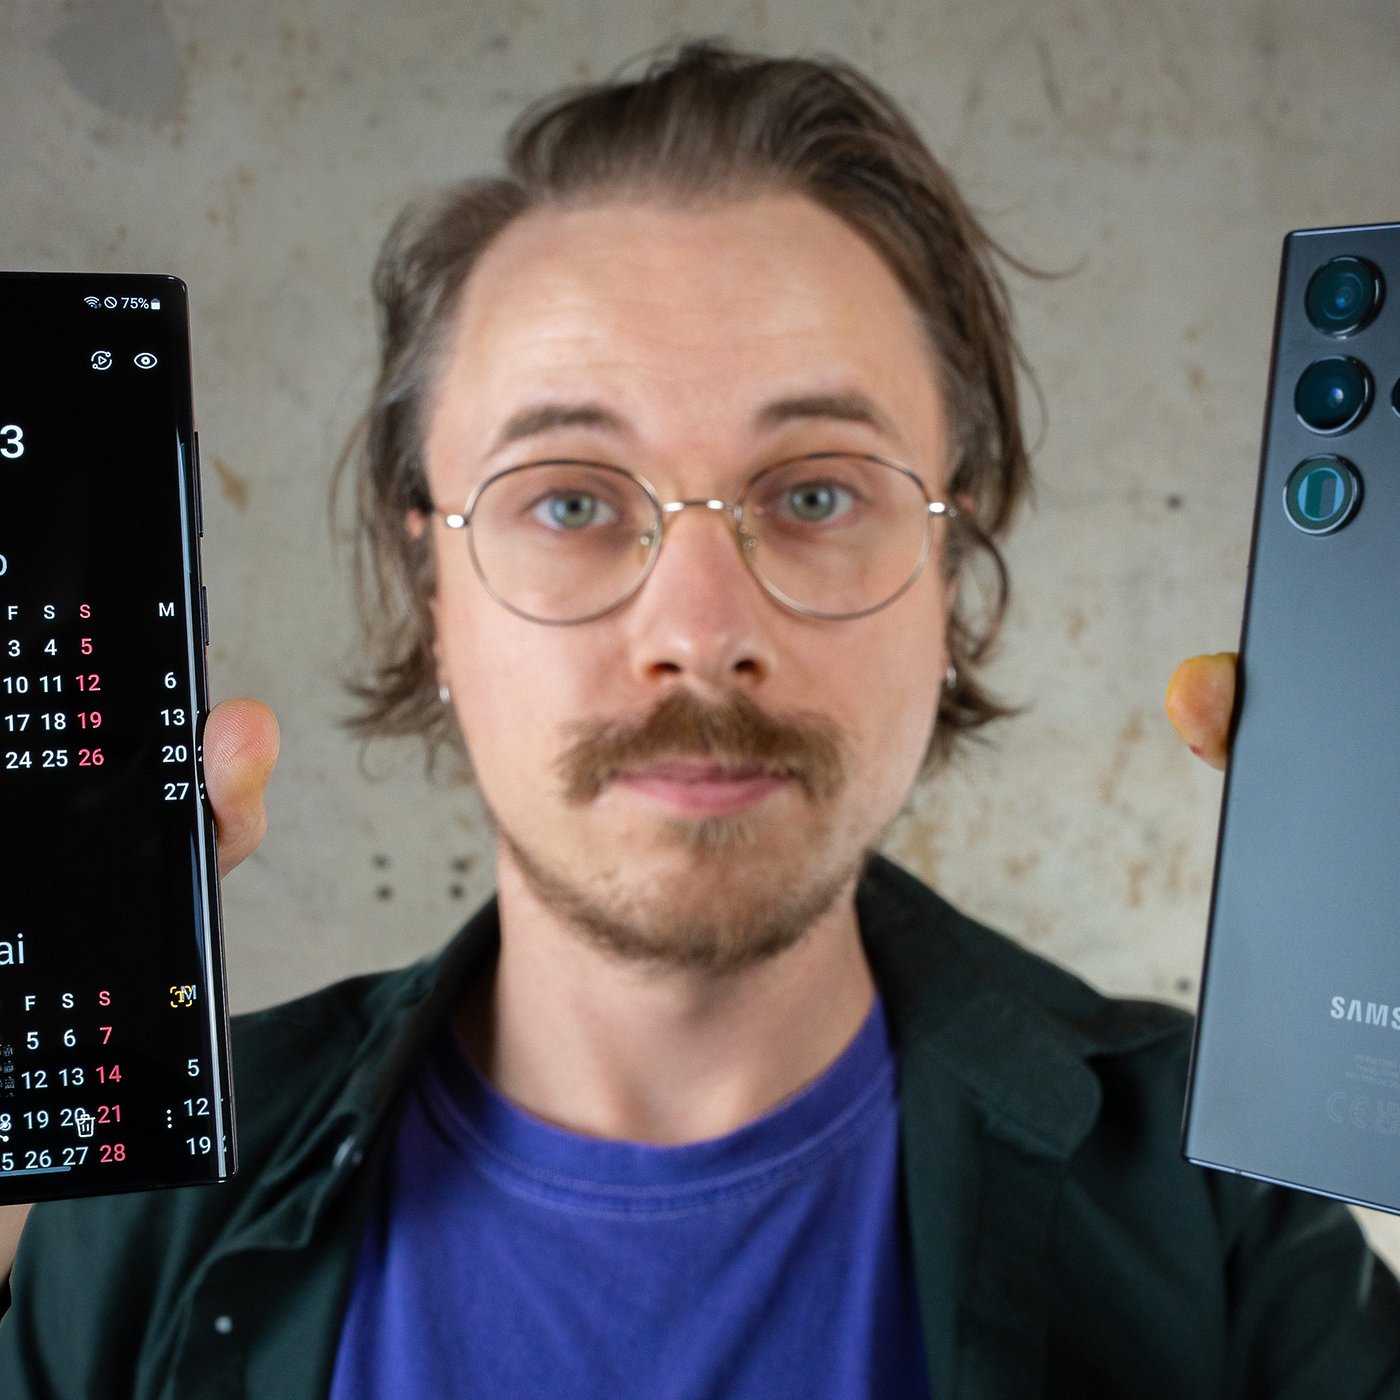 Đánh giá Samsung Galaxy S22 Ultra sẽ giúp bạn tìm hiểu nhiều hơn về sản phẩm này trước khi quyết định mua. Tăng trải nghiệm với camera siêu nét và bộ nhớ khổng lồ. Hãy xem những hình ảnh liên quan đến Galaxy S22 Ultra để có cái nhìn sâu sắc nhé!